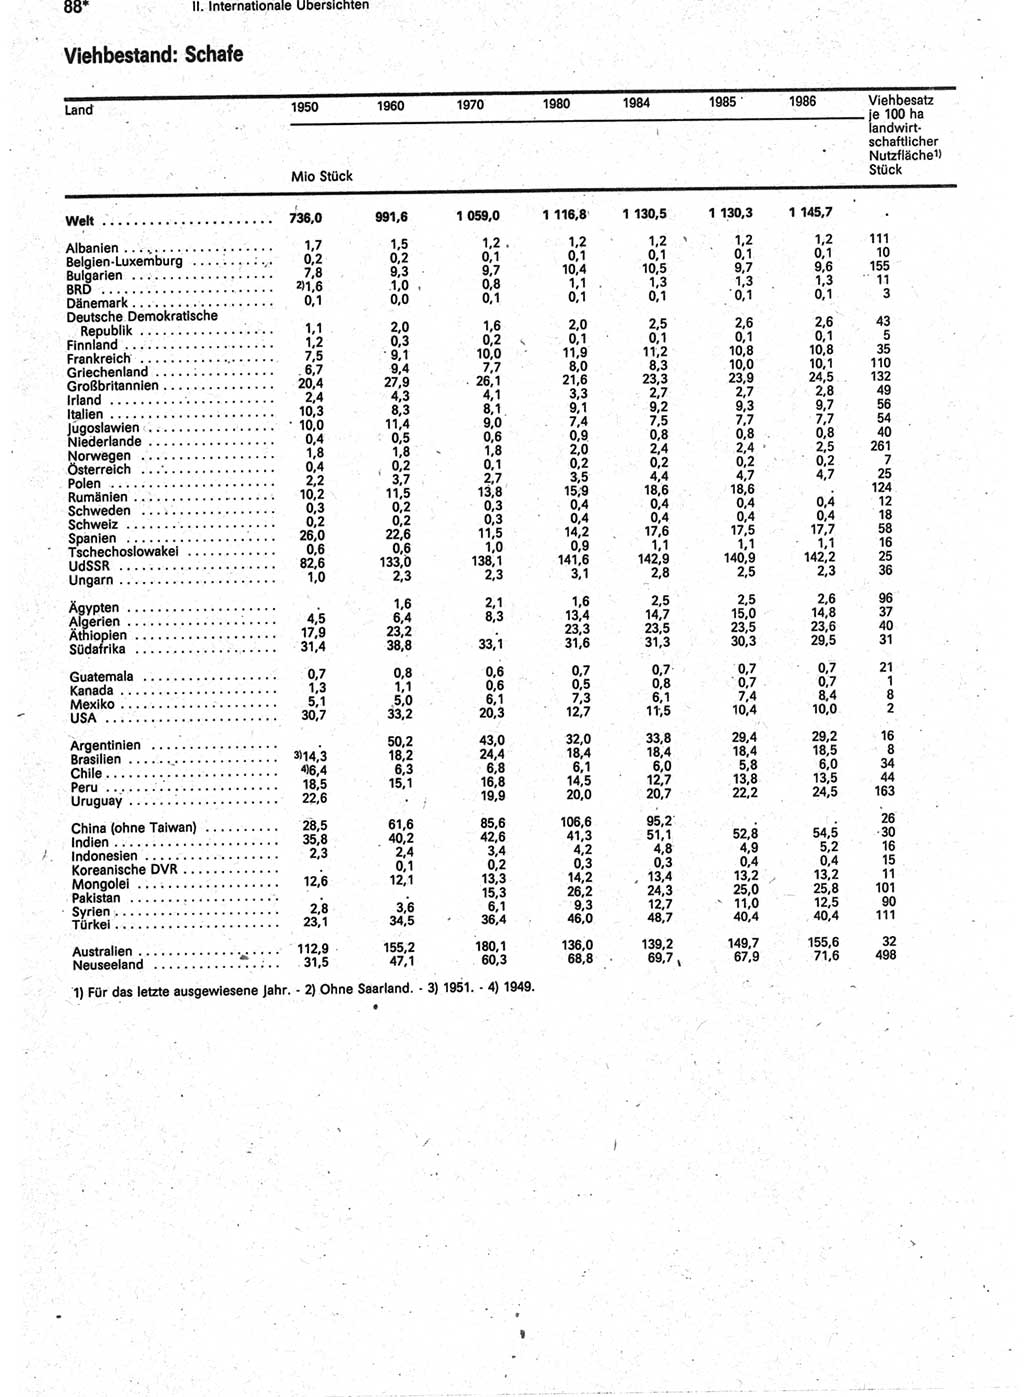 Statistisches Jahrbuch der Deutschen Demokratischen Republik (DDR) 1988, Seite 88 (Stat. Jb. DDR 1988, S. 88)